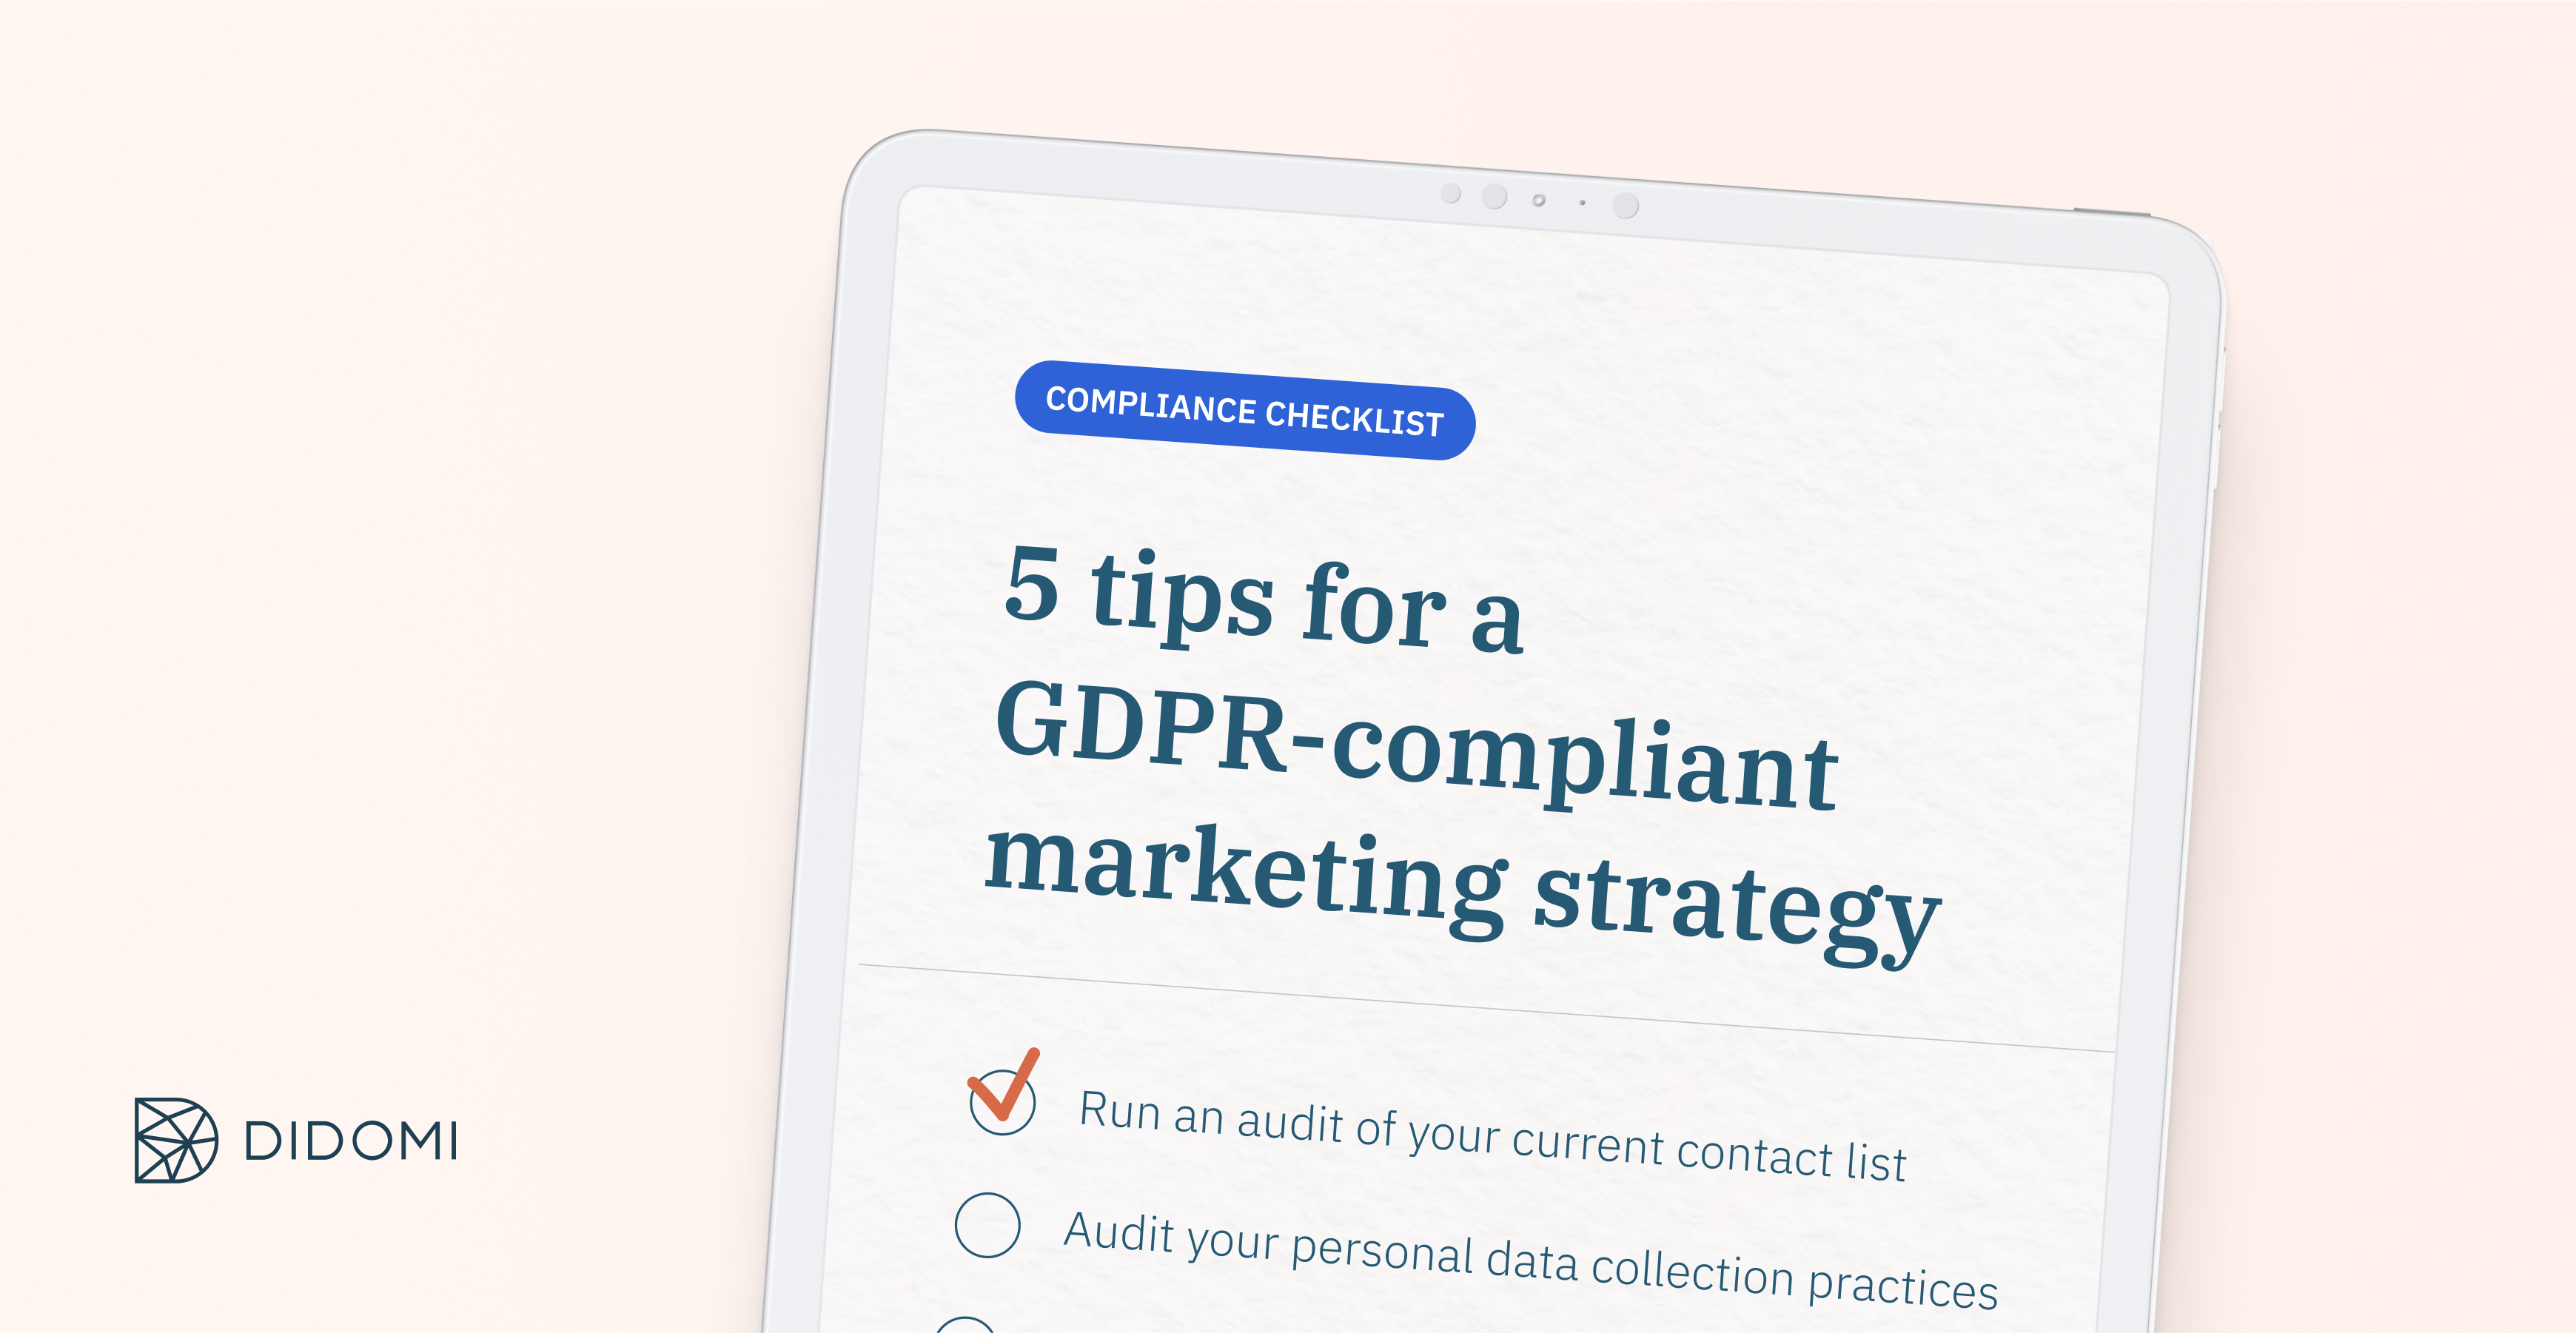 GDPR compliance checklist